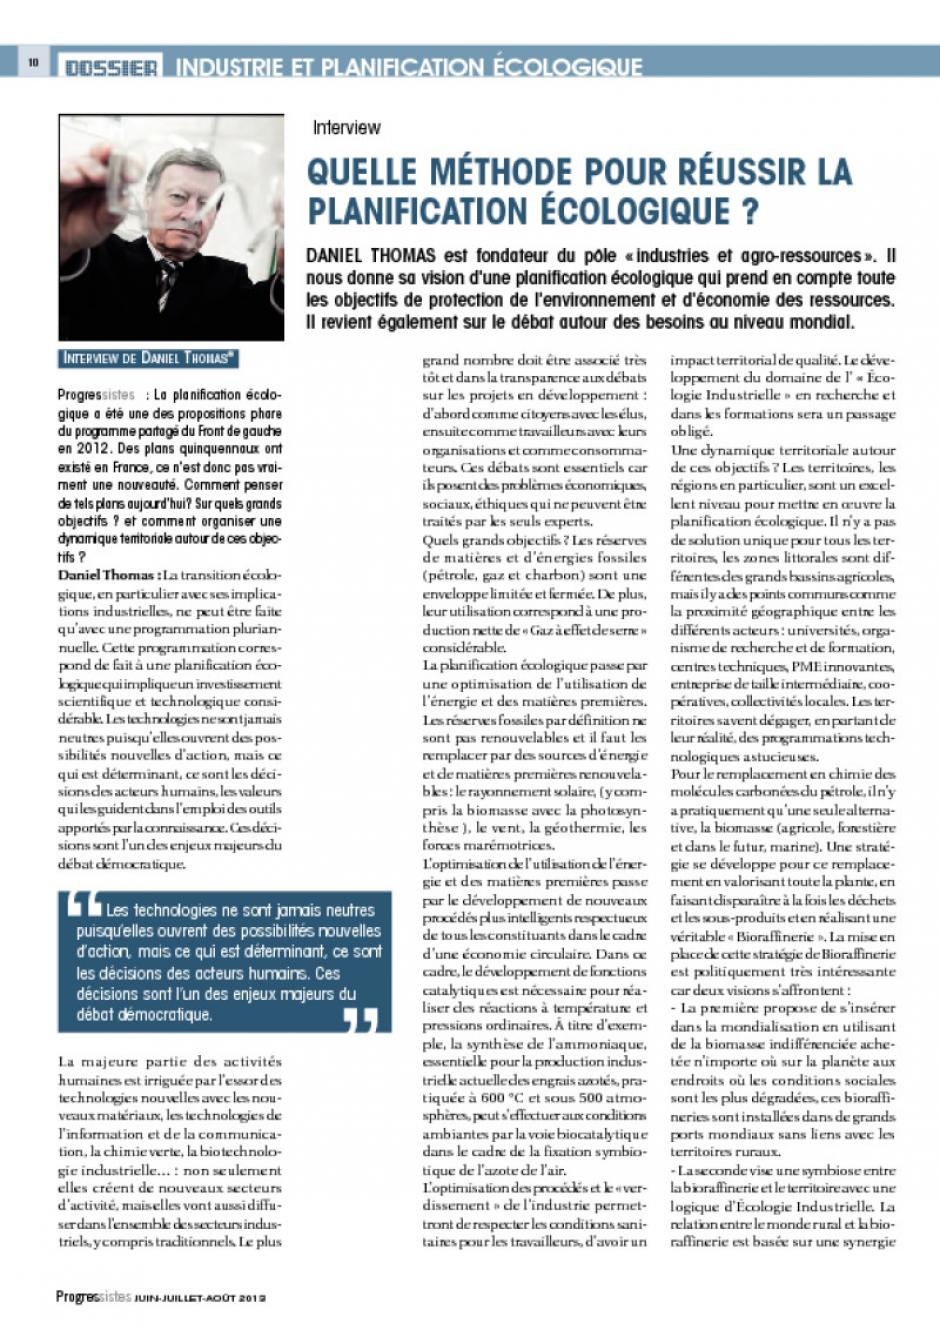 Daniel Thomas-Entretien-Quelle méthode pour réussir la planification écologique - Progressistes n° 1, juillet 2013